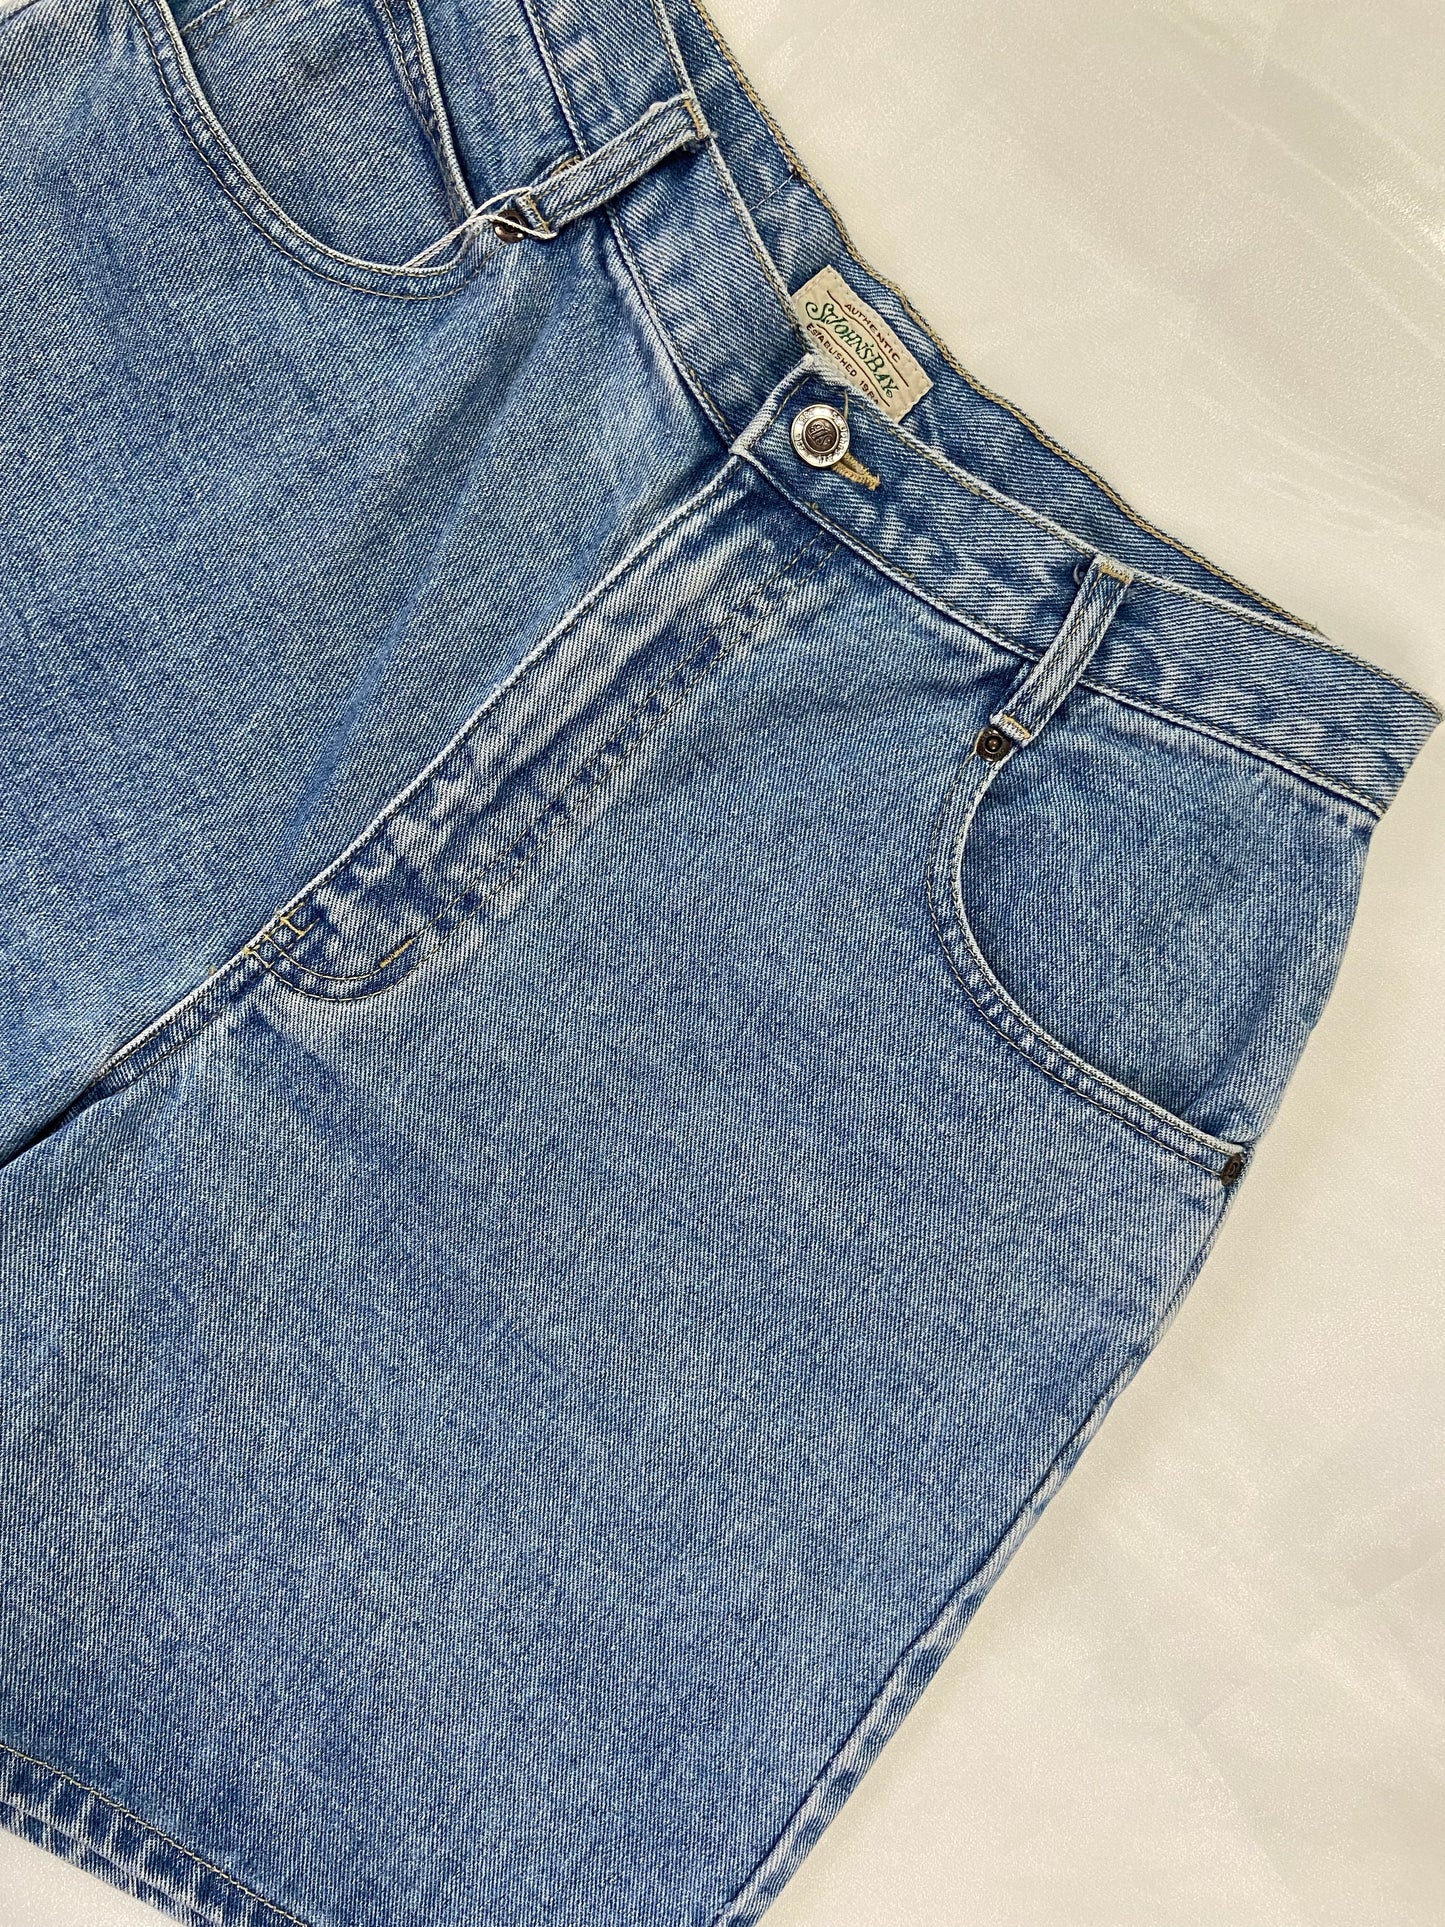 Medium Wash Denim Shorts - 29”